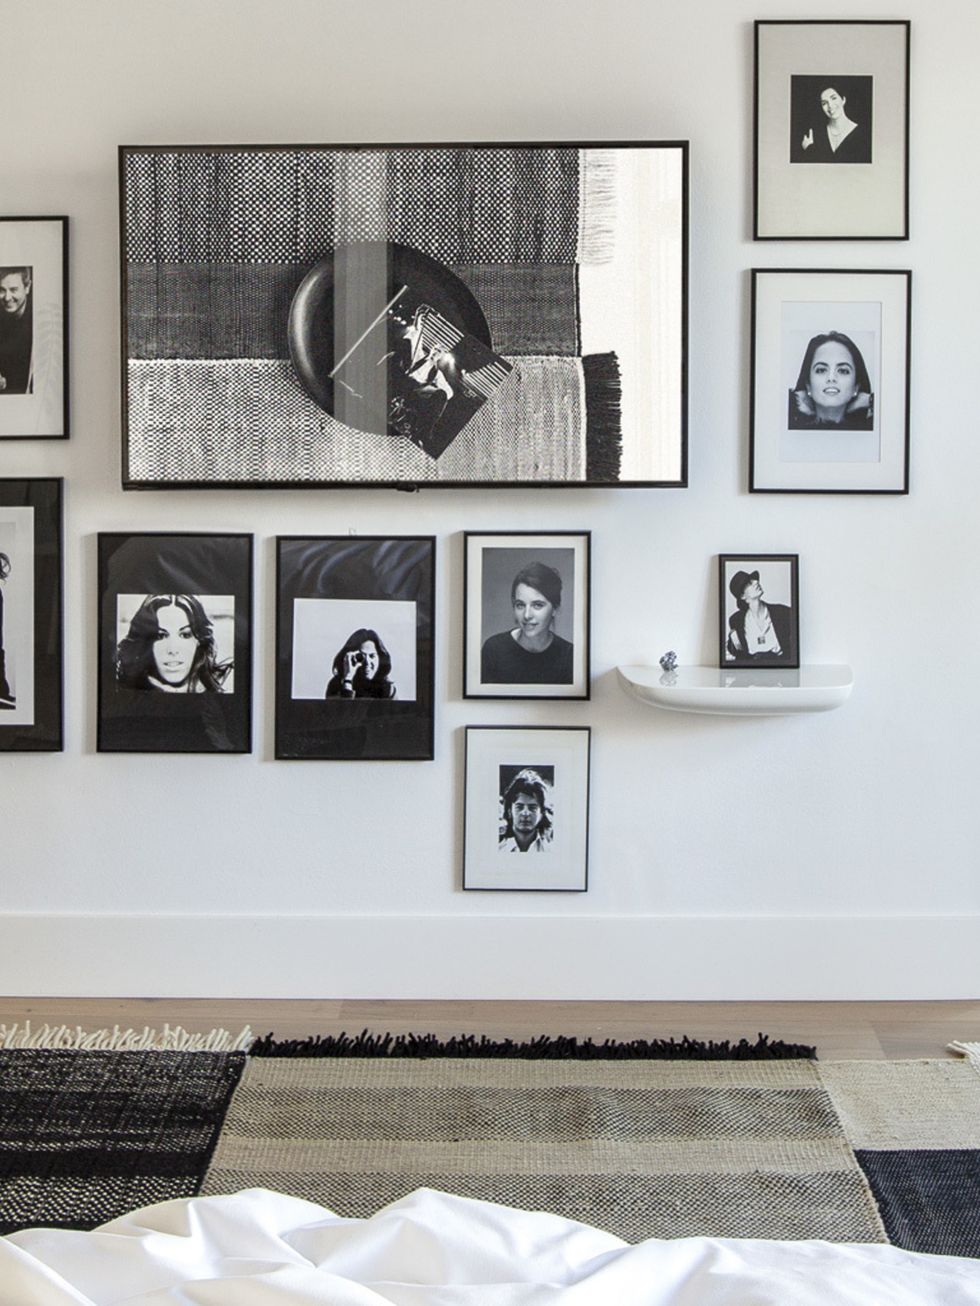 <p>Las imágenes y retratos son referencia constante en la casa, muchas de ellas firmadas por el fotógrafo Albert Font. En el dormitorio decoran toda una pared.</p>